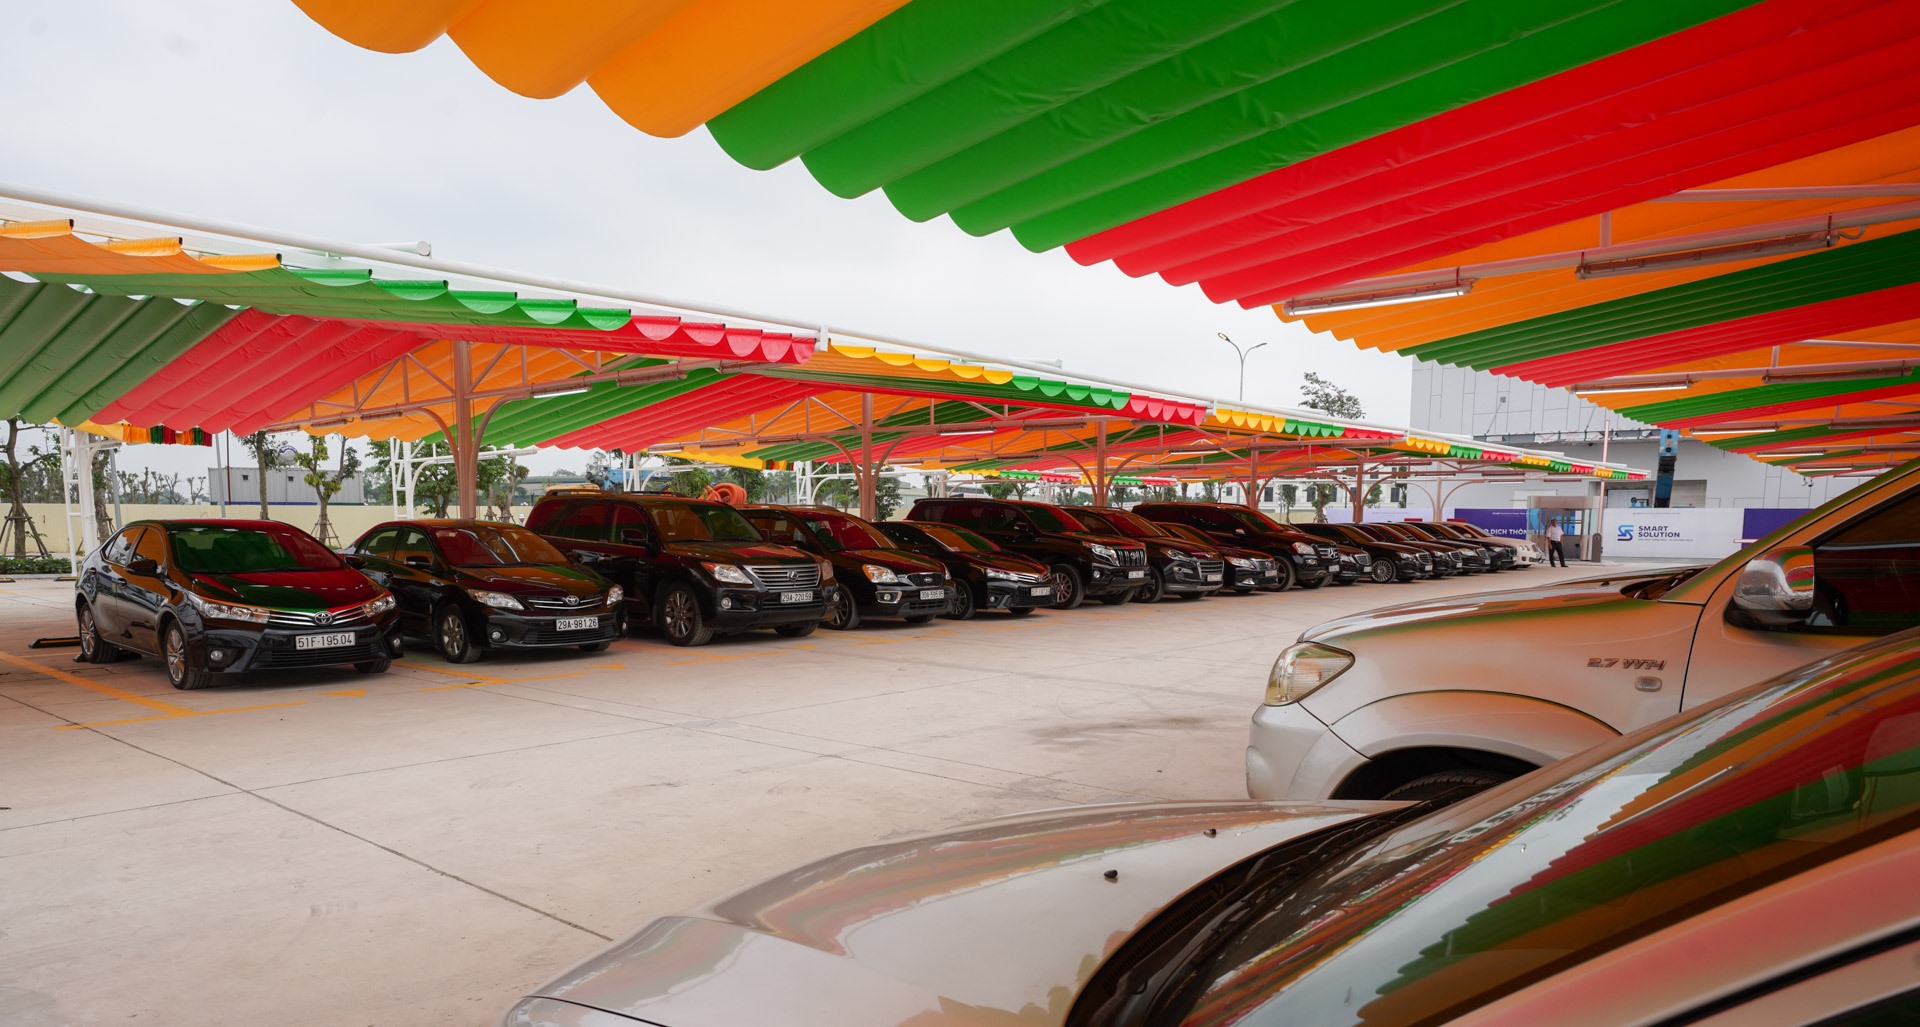 Với diện tích 5.000 m2, sức chứa 230 xe, siêu thị xe Smart Solution hiện là cơ sở kinh doanh xe cũ có quy mô lớn hàng đầu tại Việt Nam.